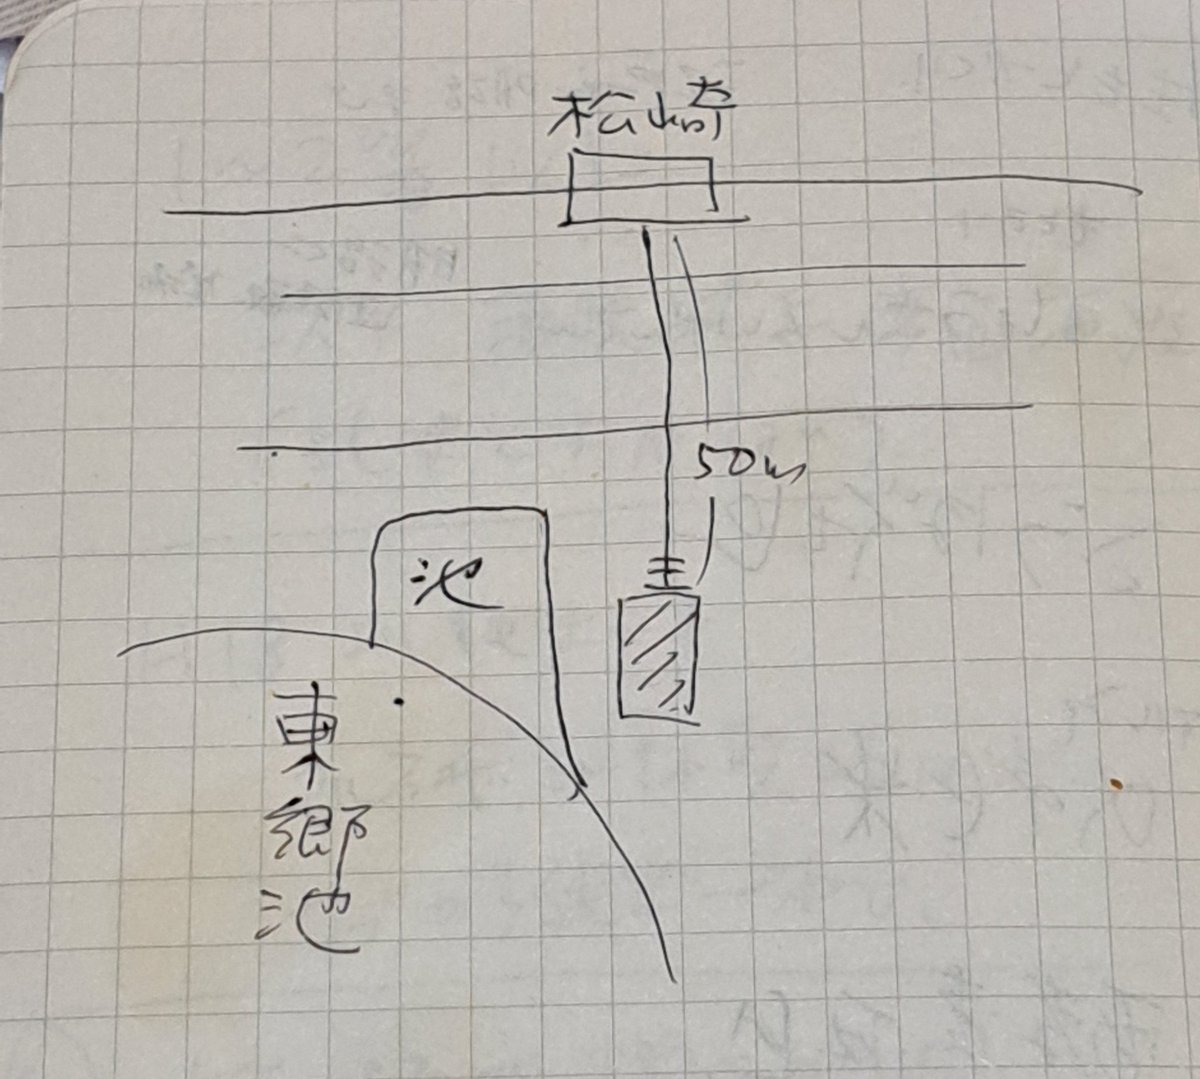 昔の手帳整理してんだけど、これって福浦酒造さんの地図かな?🤔
誰の字やろ???(私じゃない)
梅津酒造さんの後に行った形跡はある。 